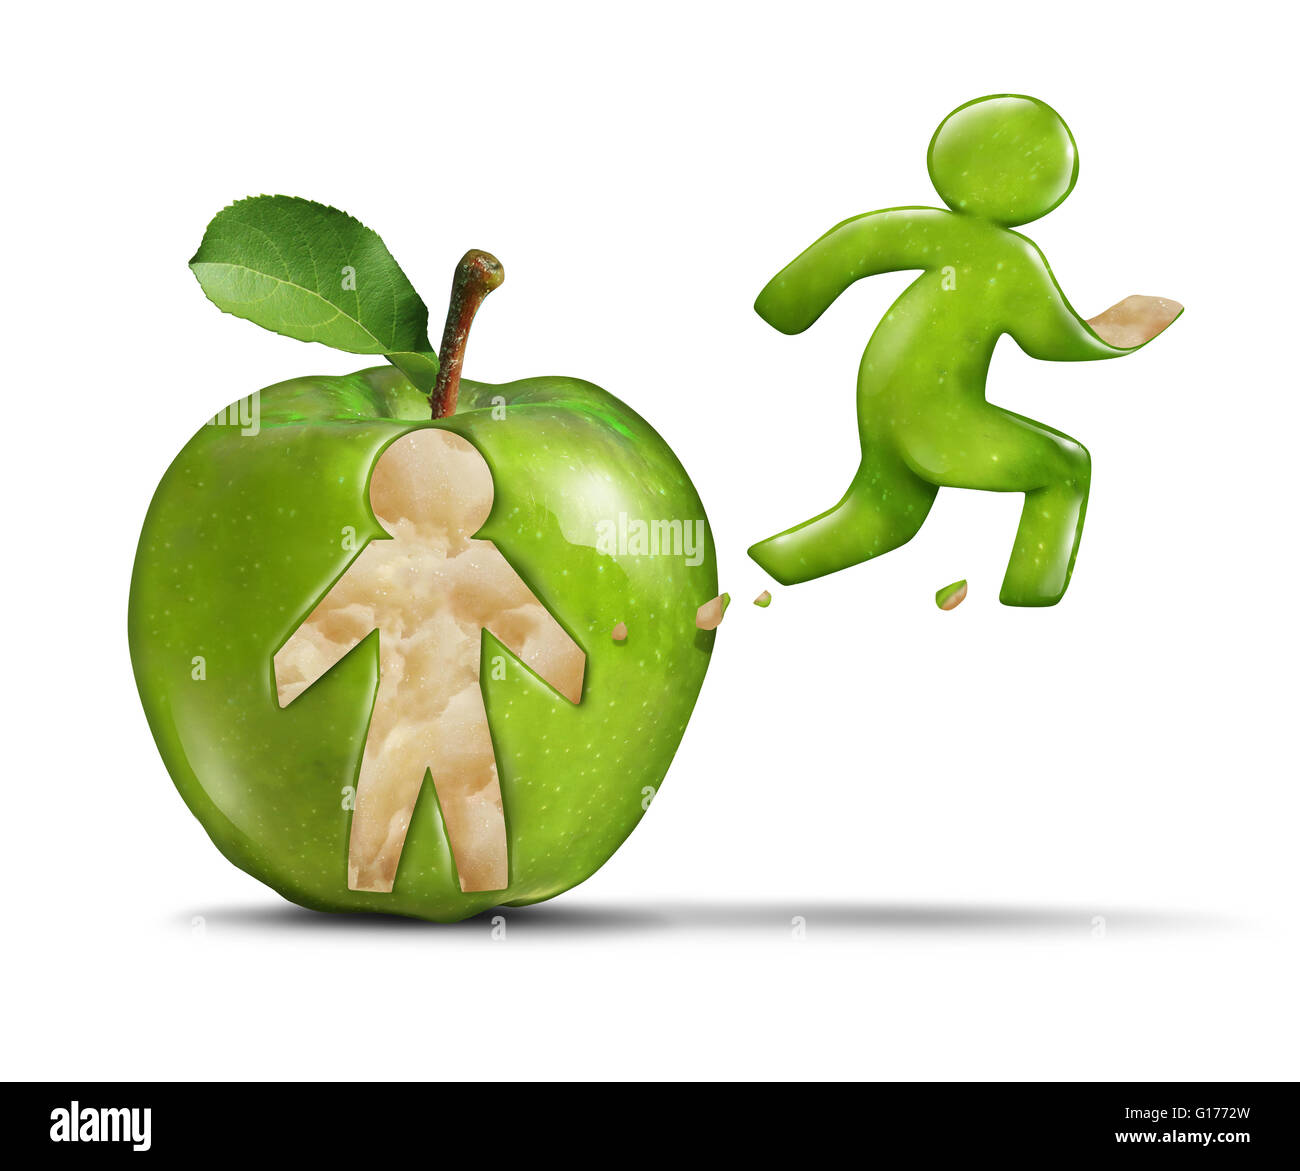 Apple fitness attivo uno stile di vita sano come una mela verde con una forma persona distaccata la buccia del frutto conformata come un pareggiatore Foto Stock